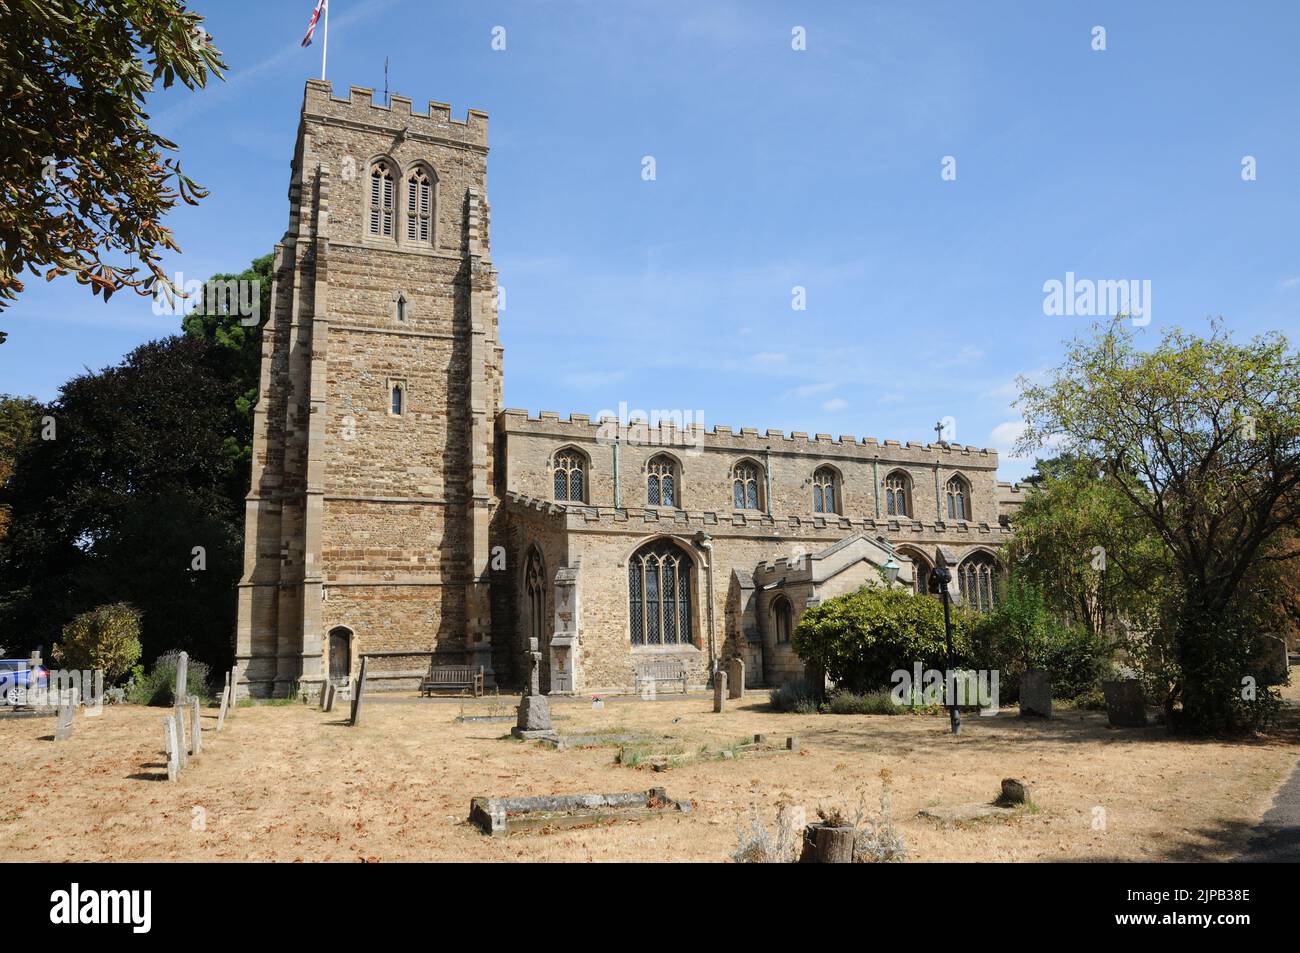 St Mary's Church, Eaton Socon, Cambridgeshire Stock Photo